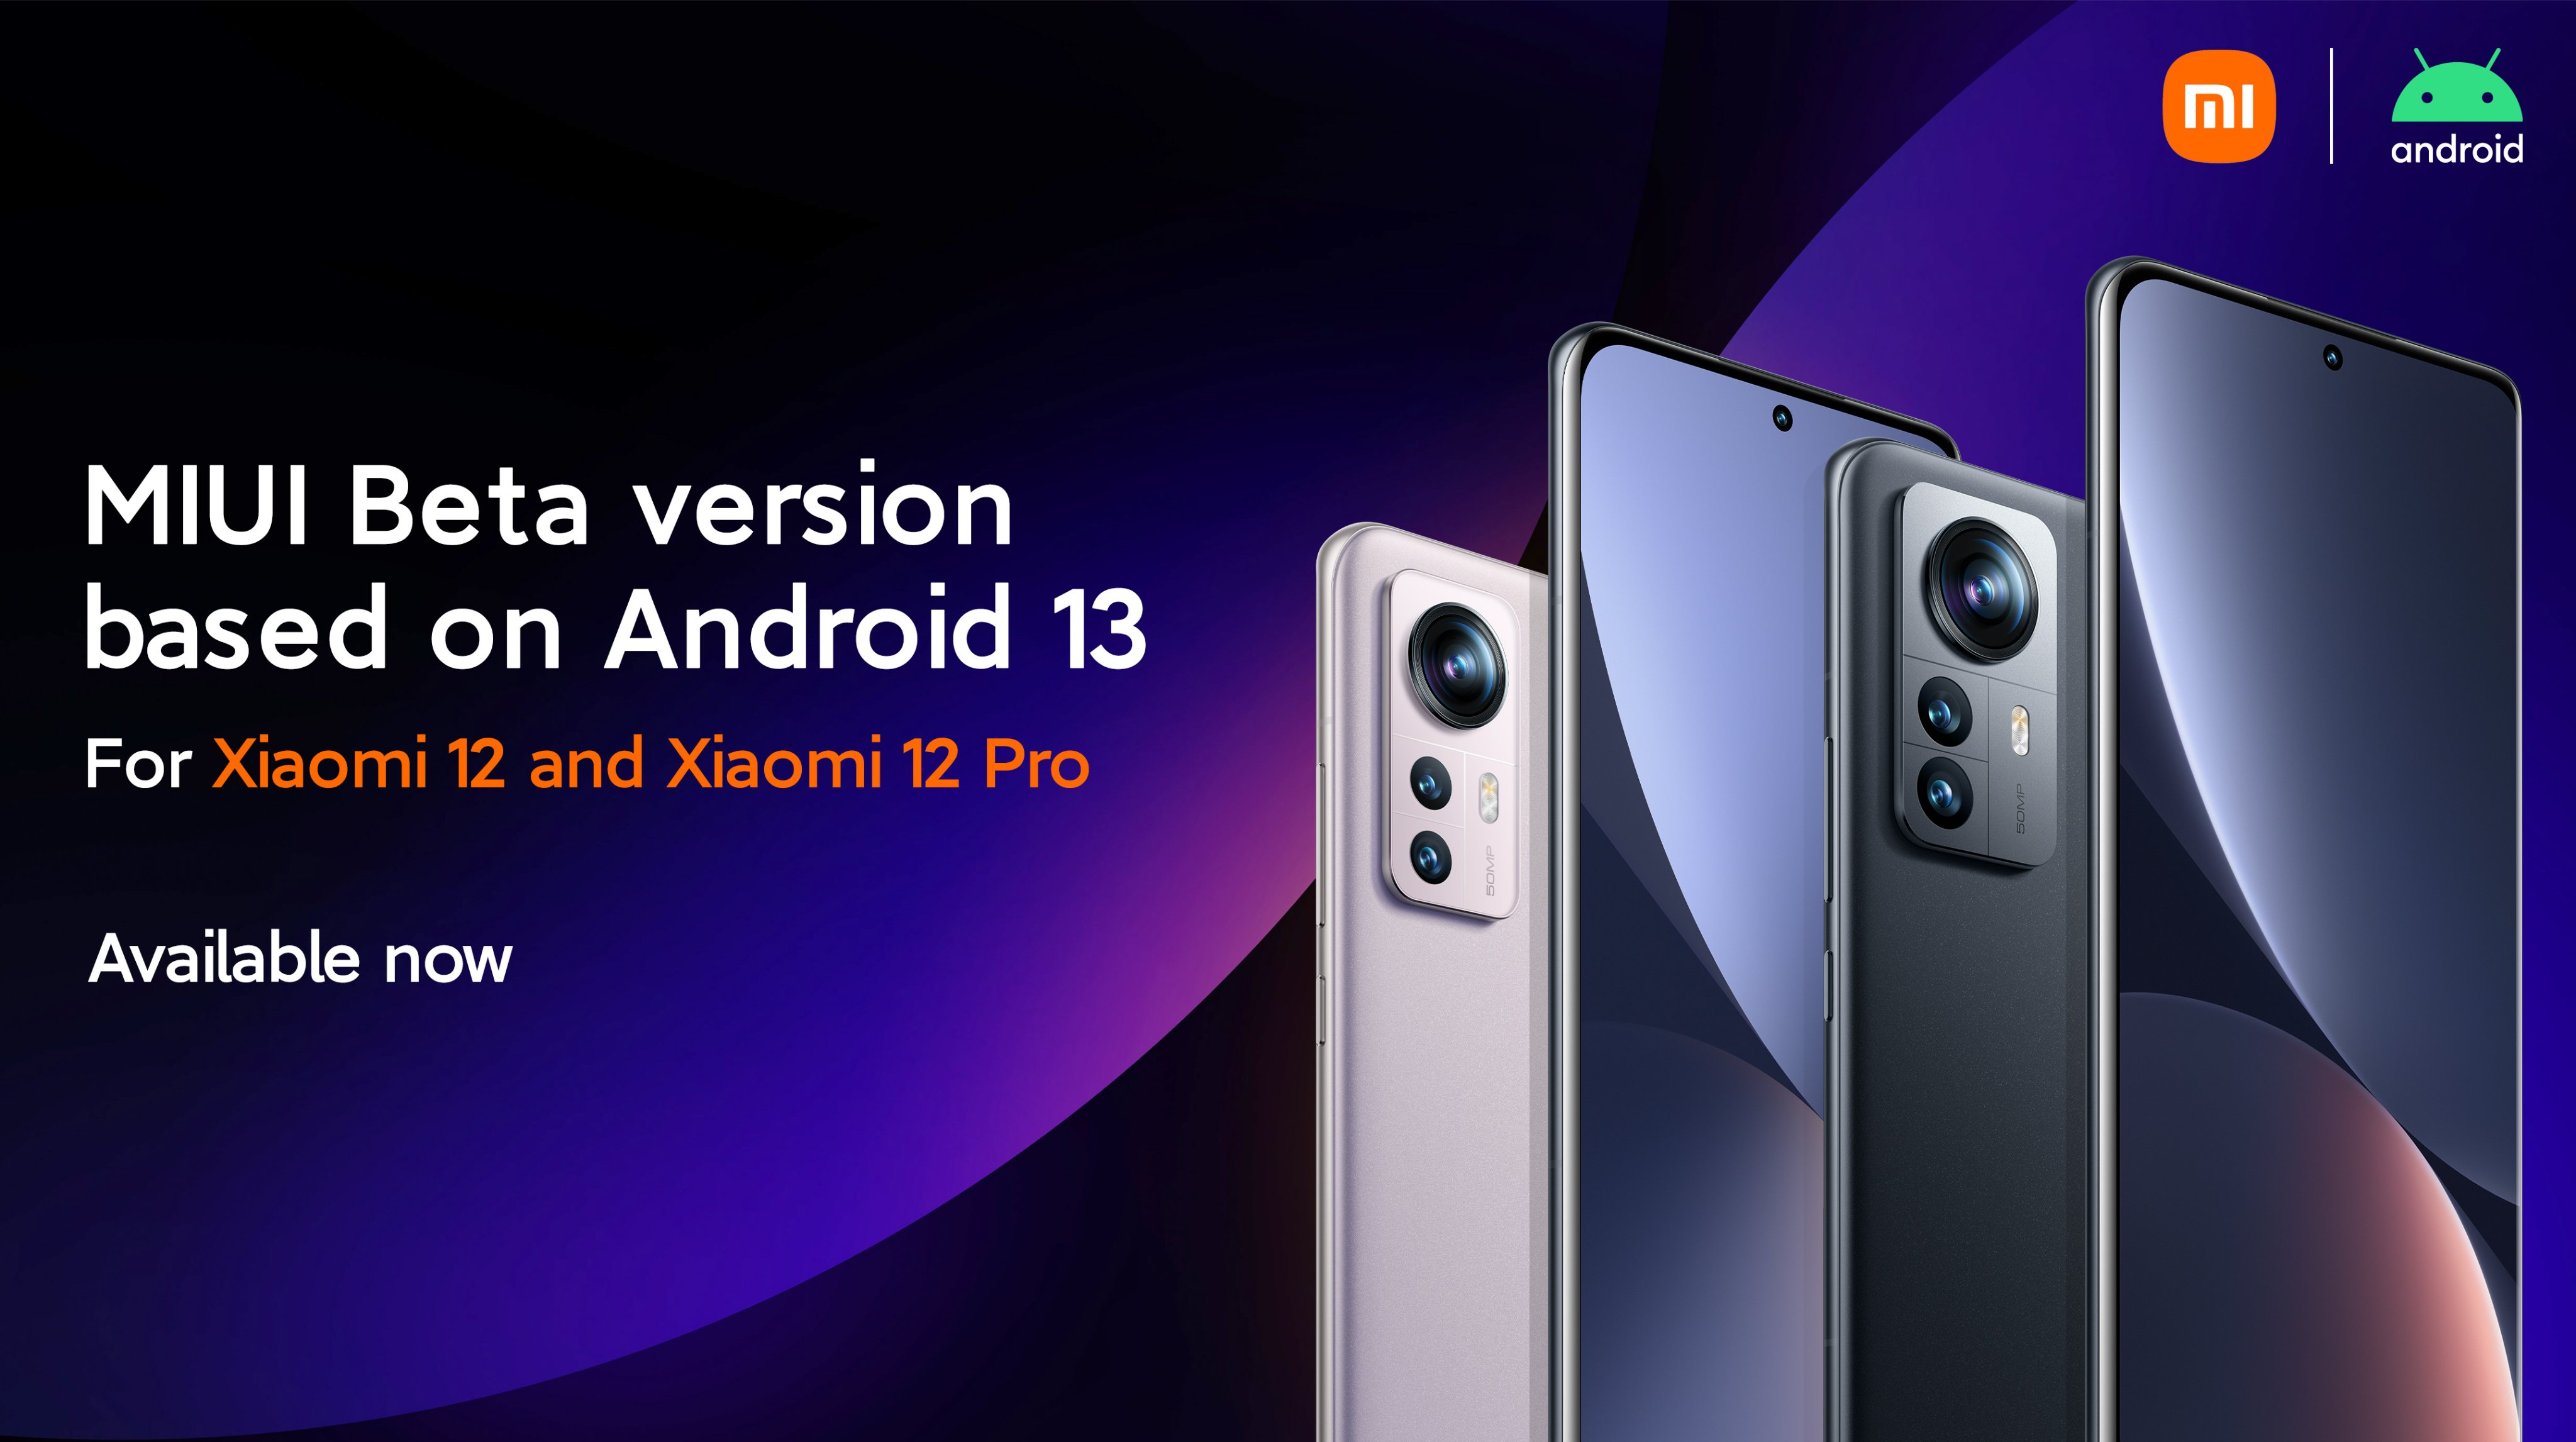 Xiaomi 12 et Xiaomi 12 Pro obtiennent une version bêta de MIUI 13 basée sur Android 13